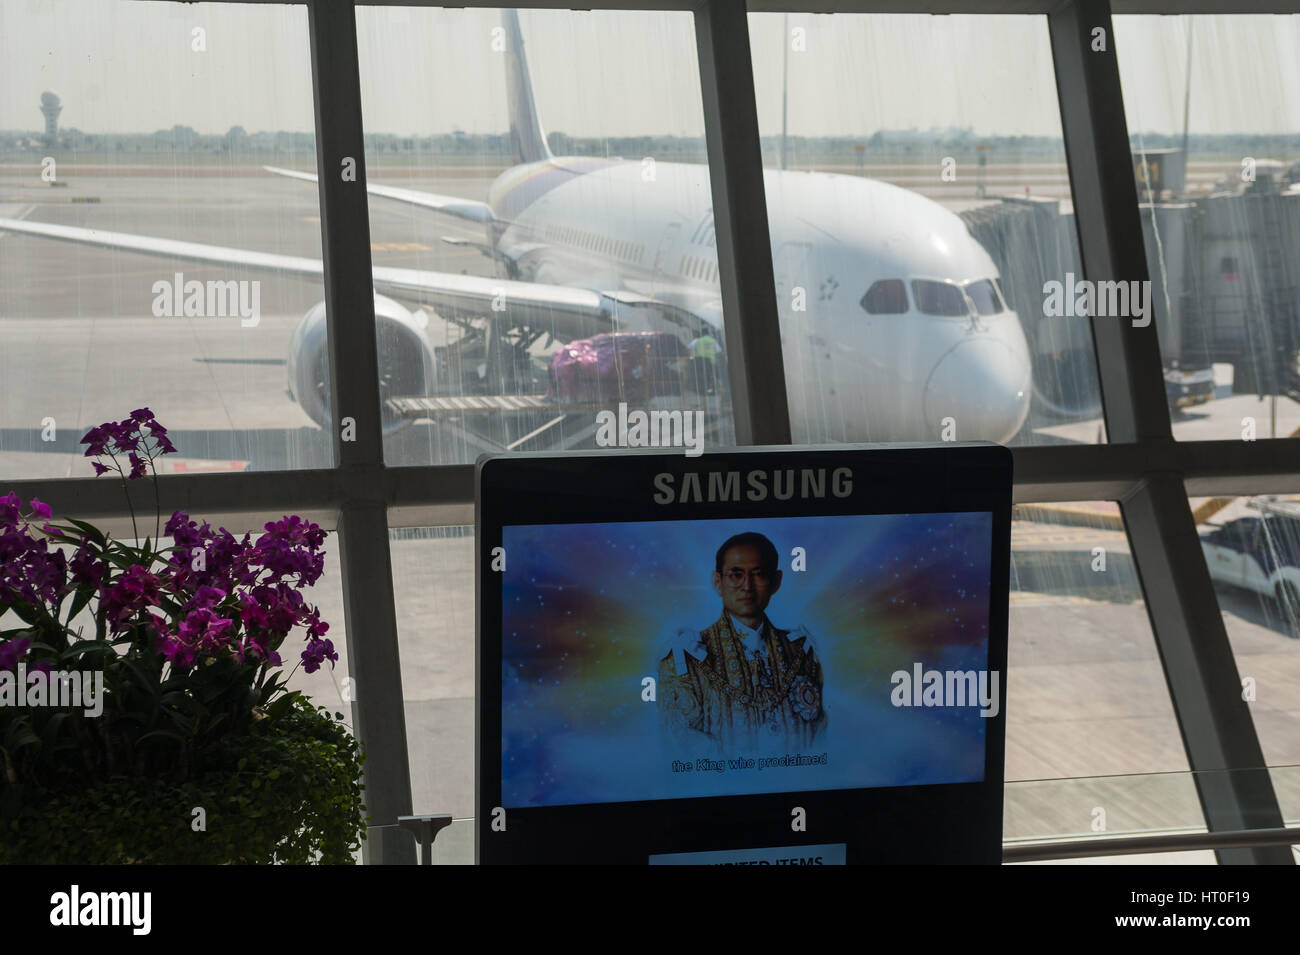 08.02.2017, Bangkok, Thailandia, Asia - un Thai Airways piano passeggero è parcheggiata in corrispondenza di un cancello a Bangkok Suvarnabhumi Airport. Foto Stock